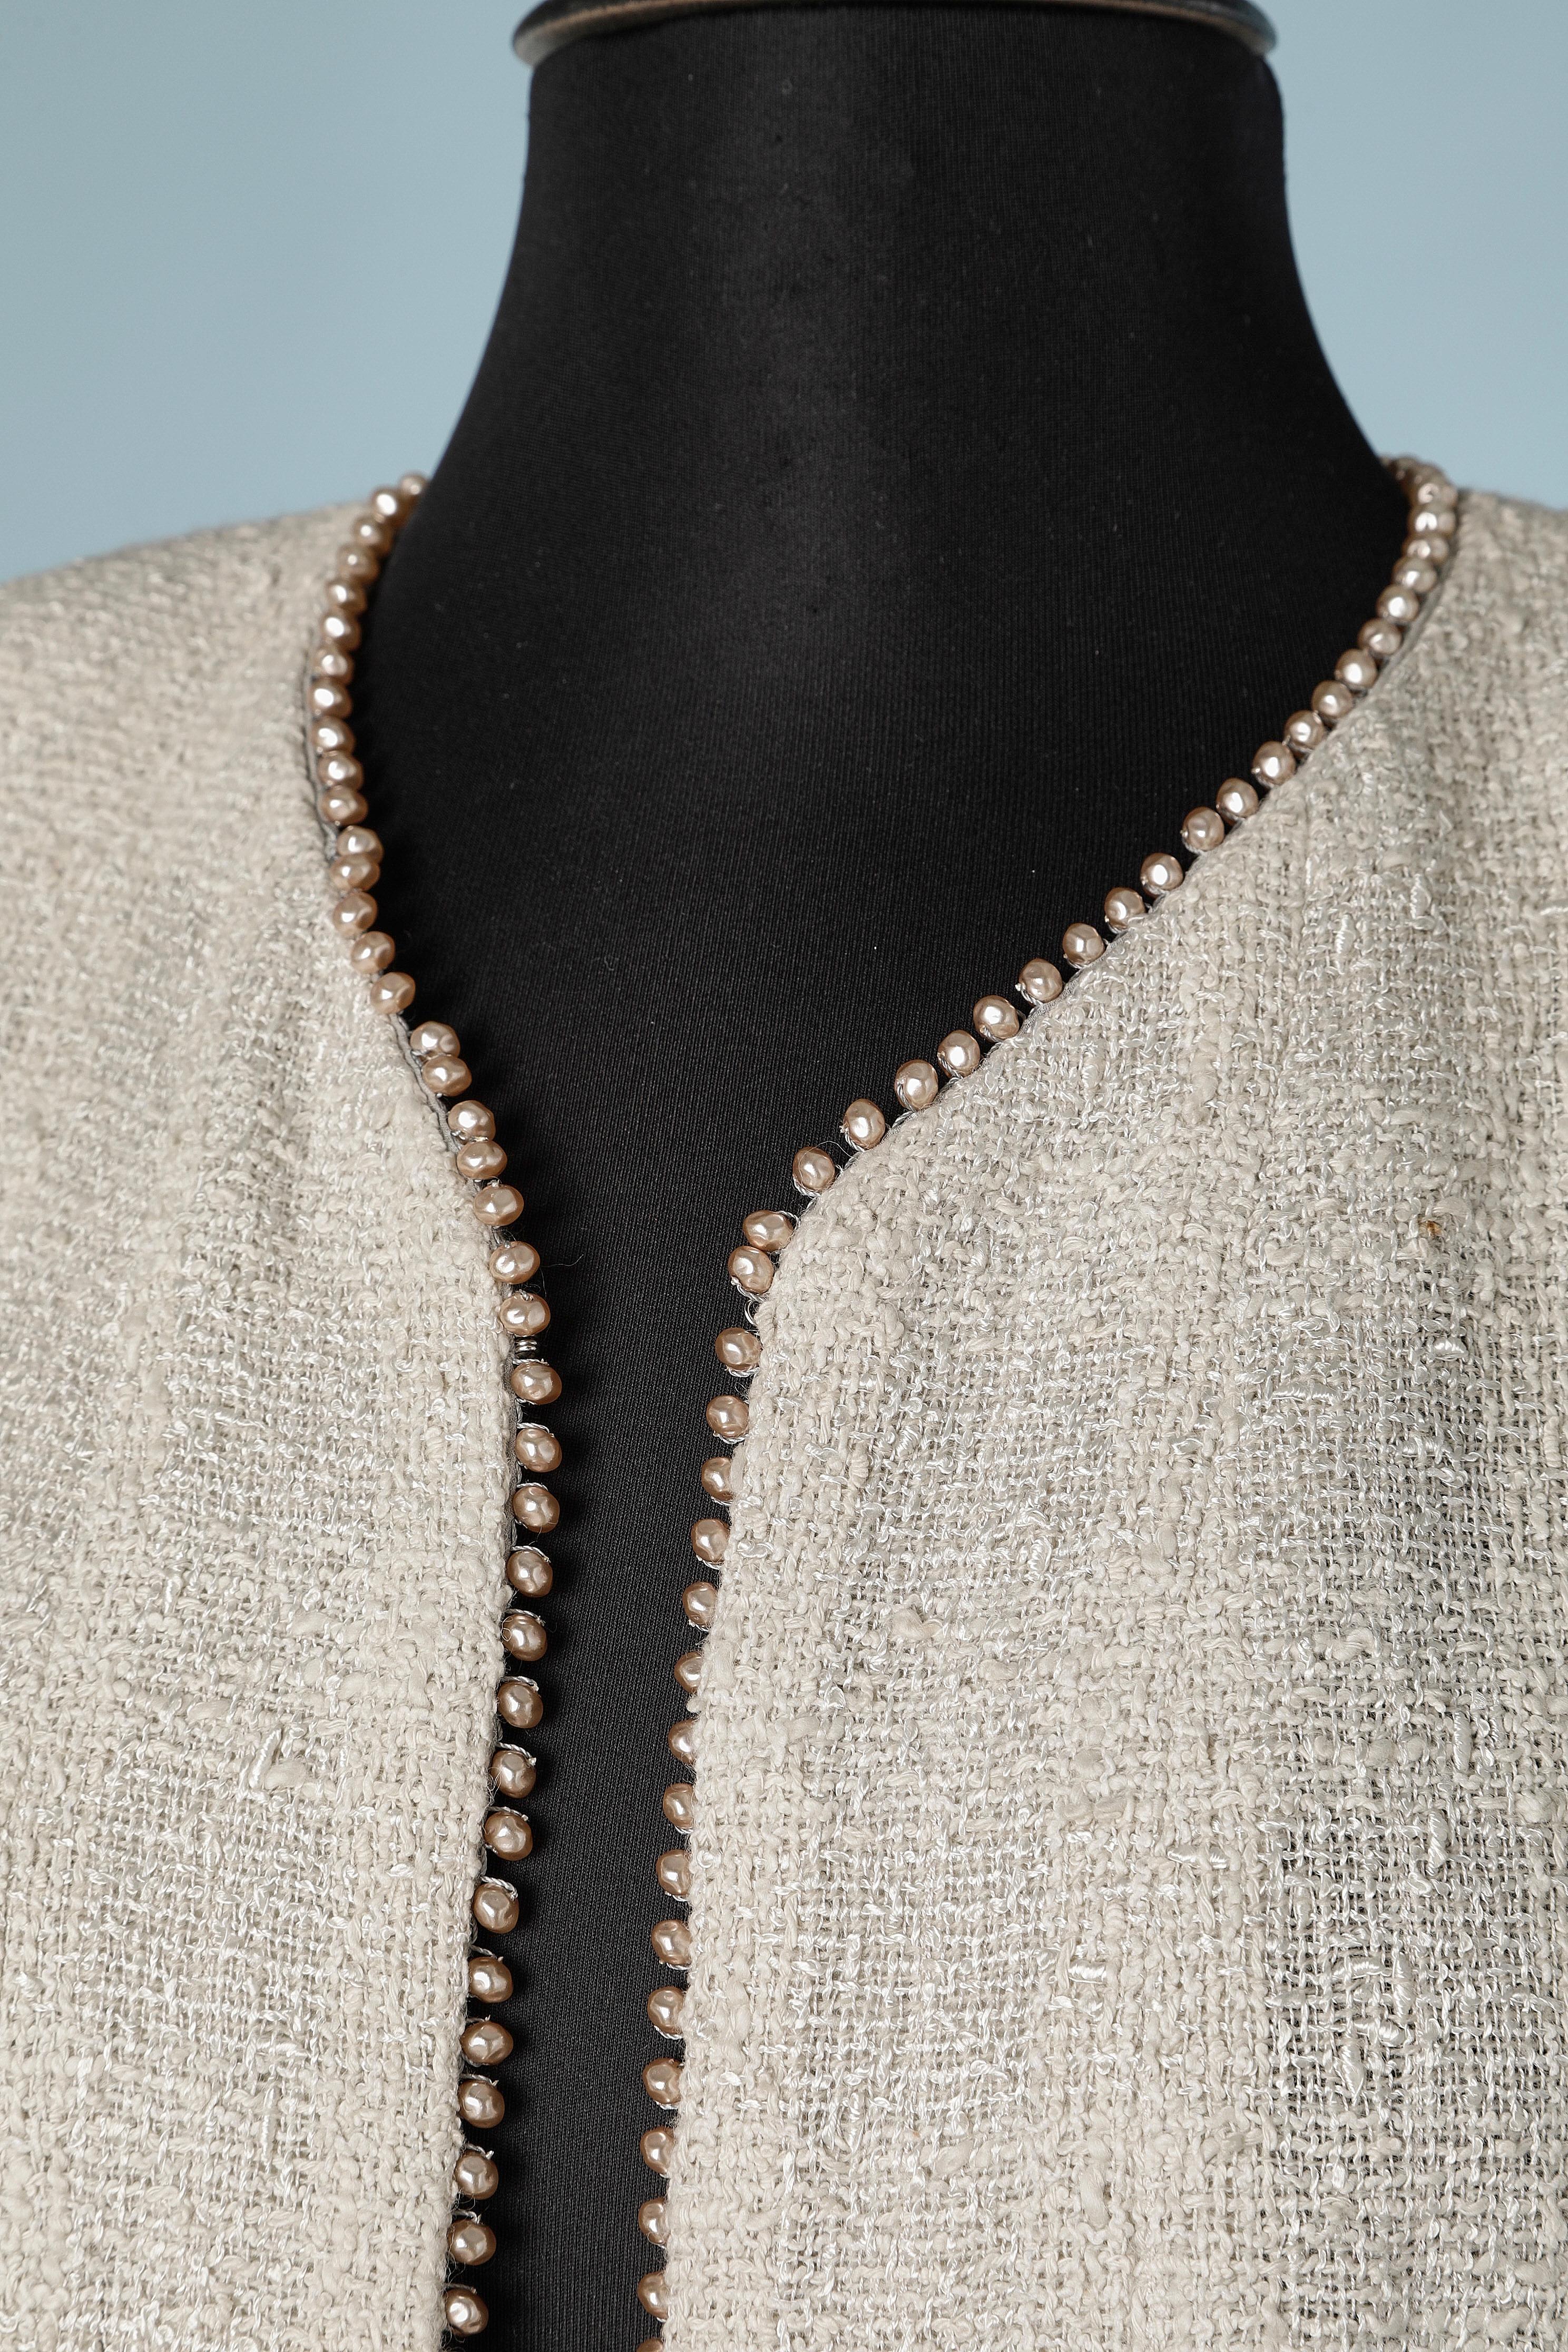 Graue Tweedjacke mit Perlmuttperlen am Rand. Futter aus Baumwolle. 
Schulterpads. Metallkette an der unteren Innenkante. 
GRÖSSE 42 (L) 